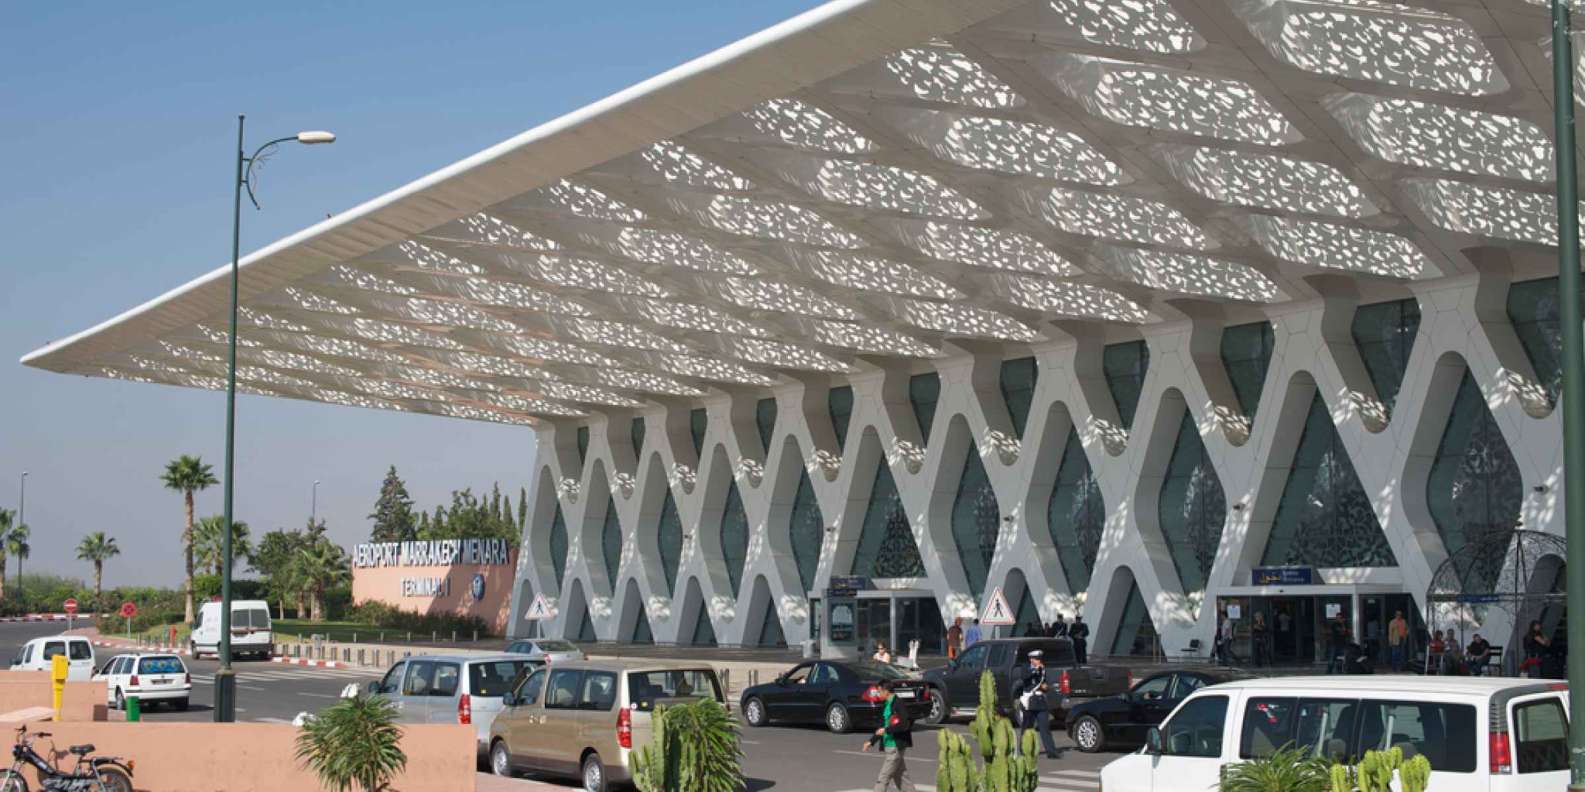 Location de véhicule à l'aéroport de Marrakech